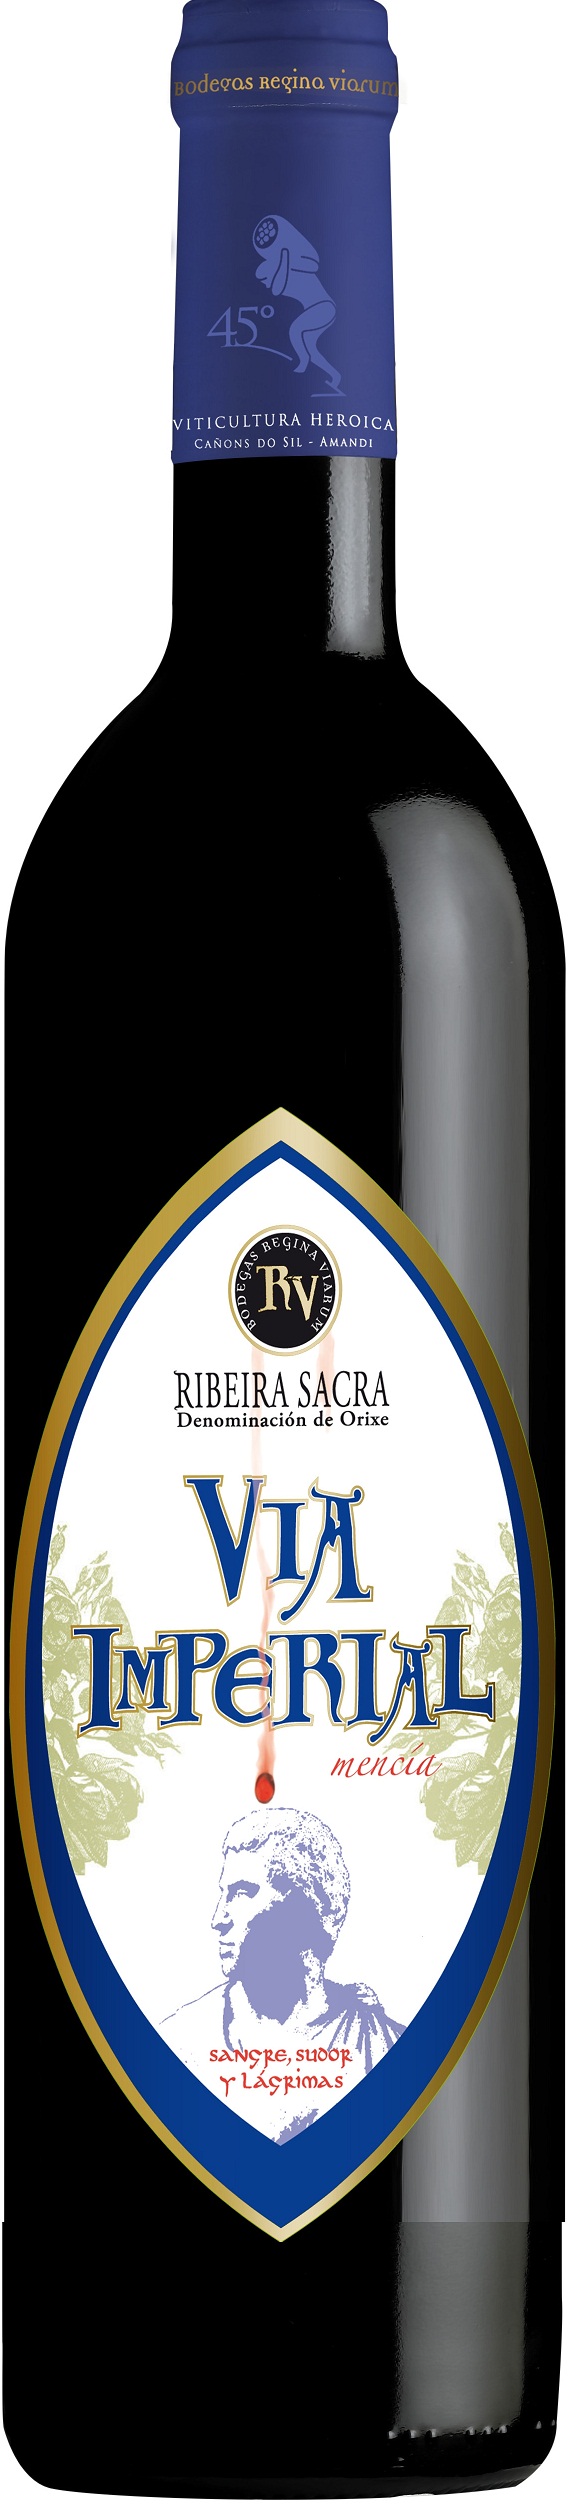 Bild von der Weinflasche Vía Imperial